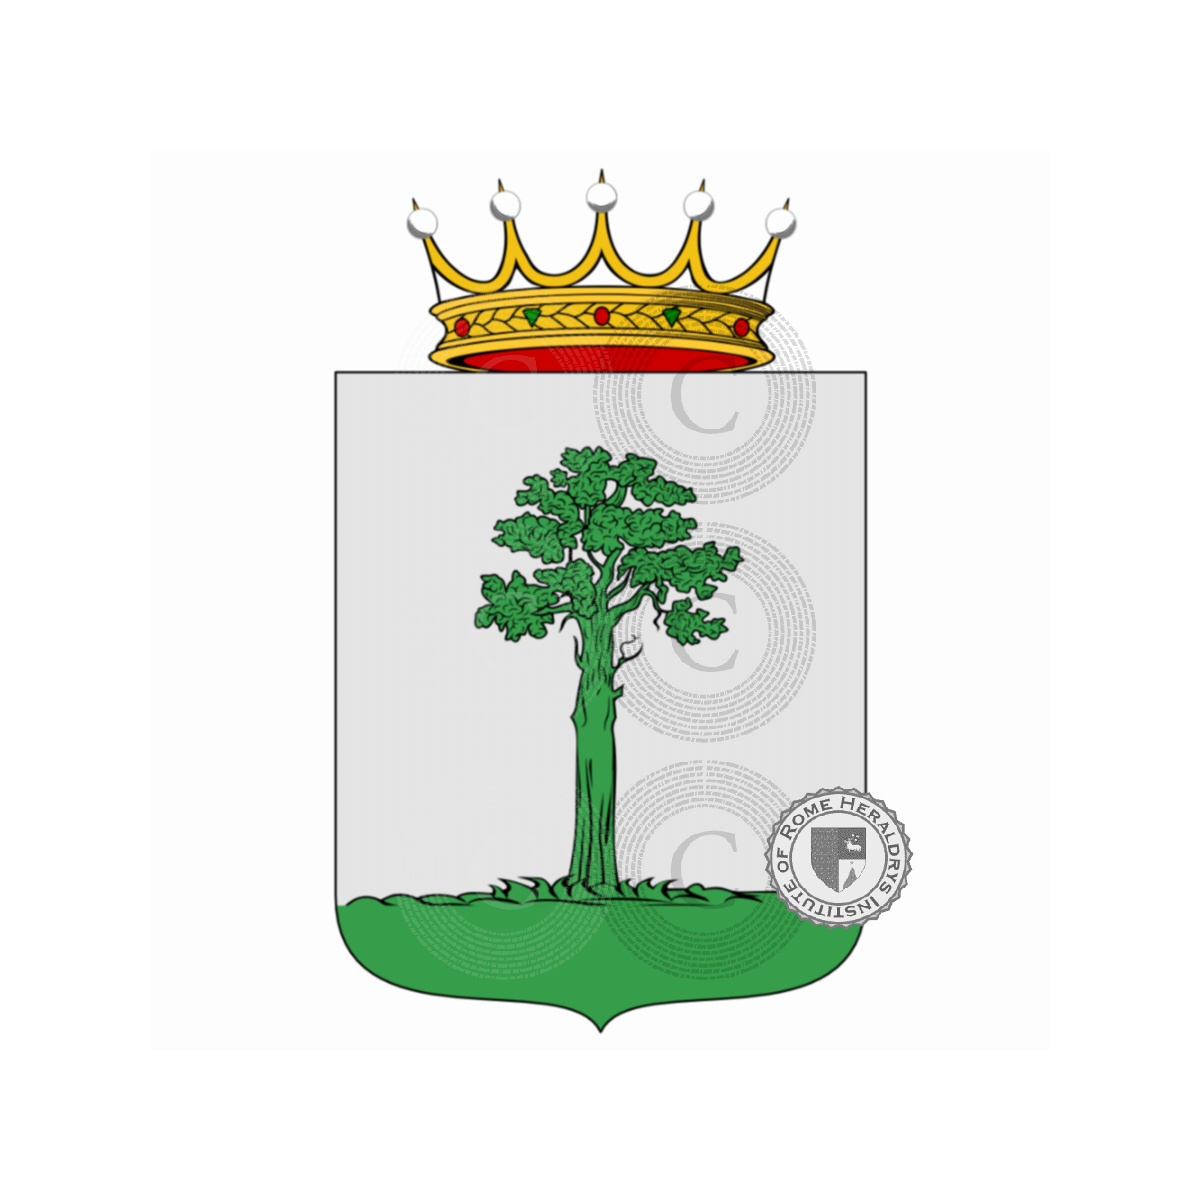 Wappen der FamilieLugano, da Lugano,de Lugano